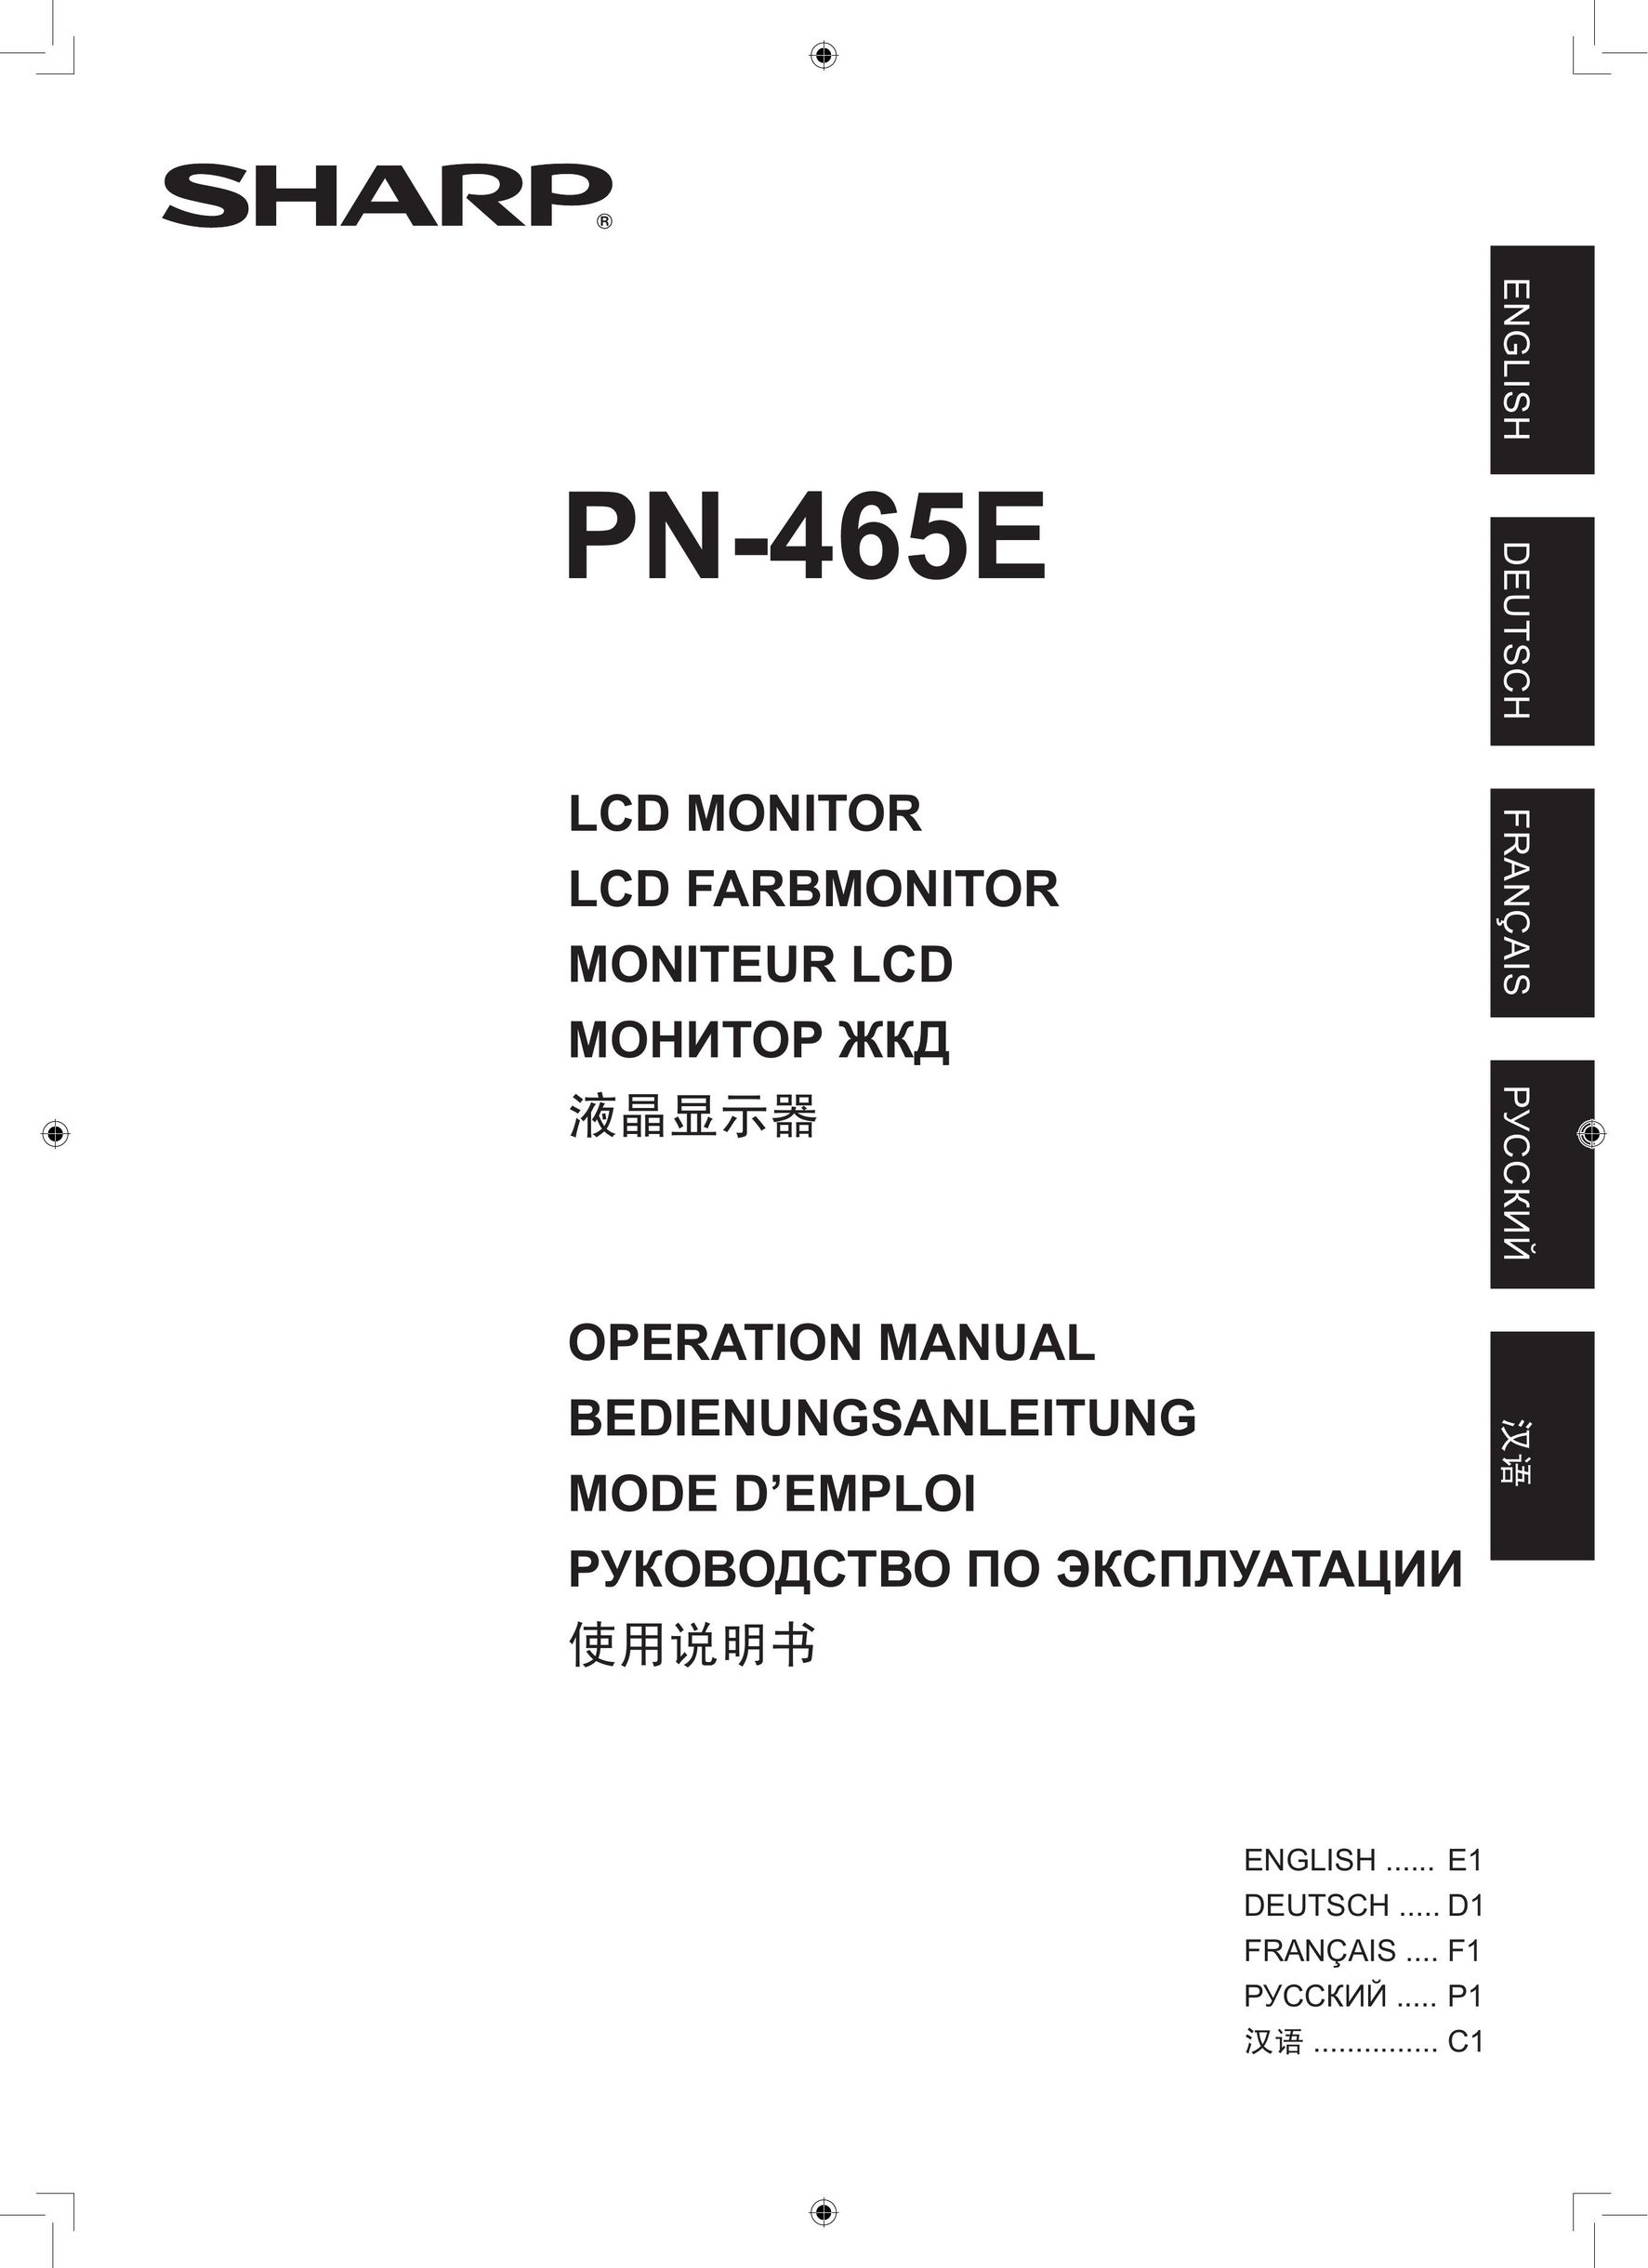 Sharp PN-465E Car Video System User Manual